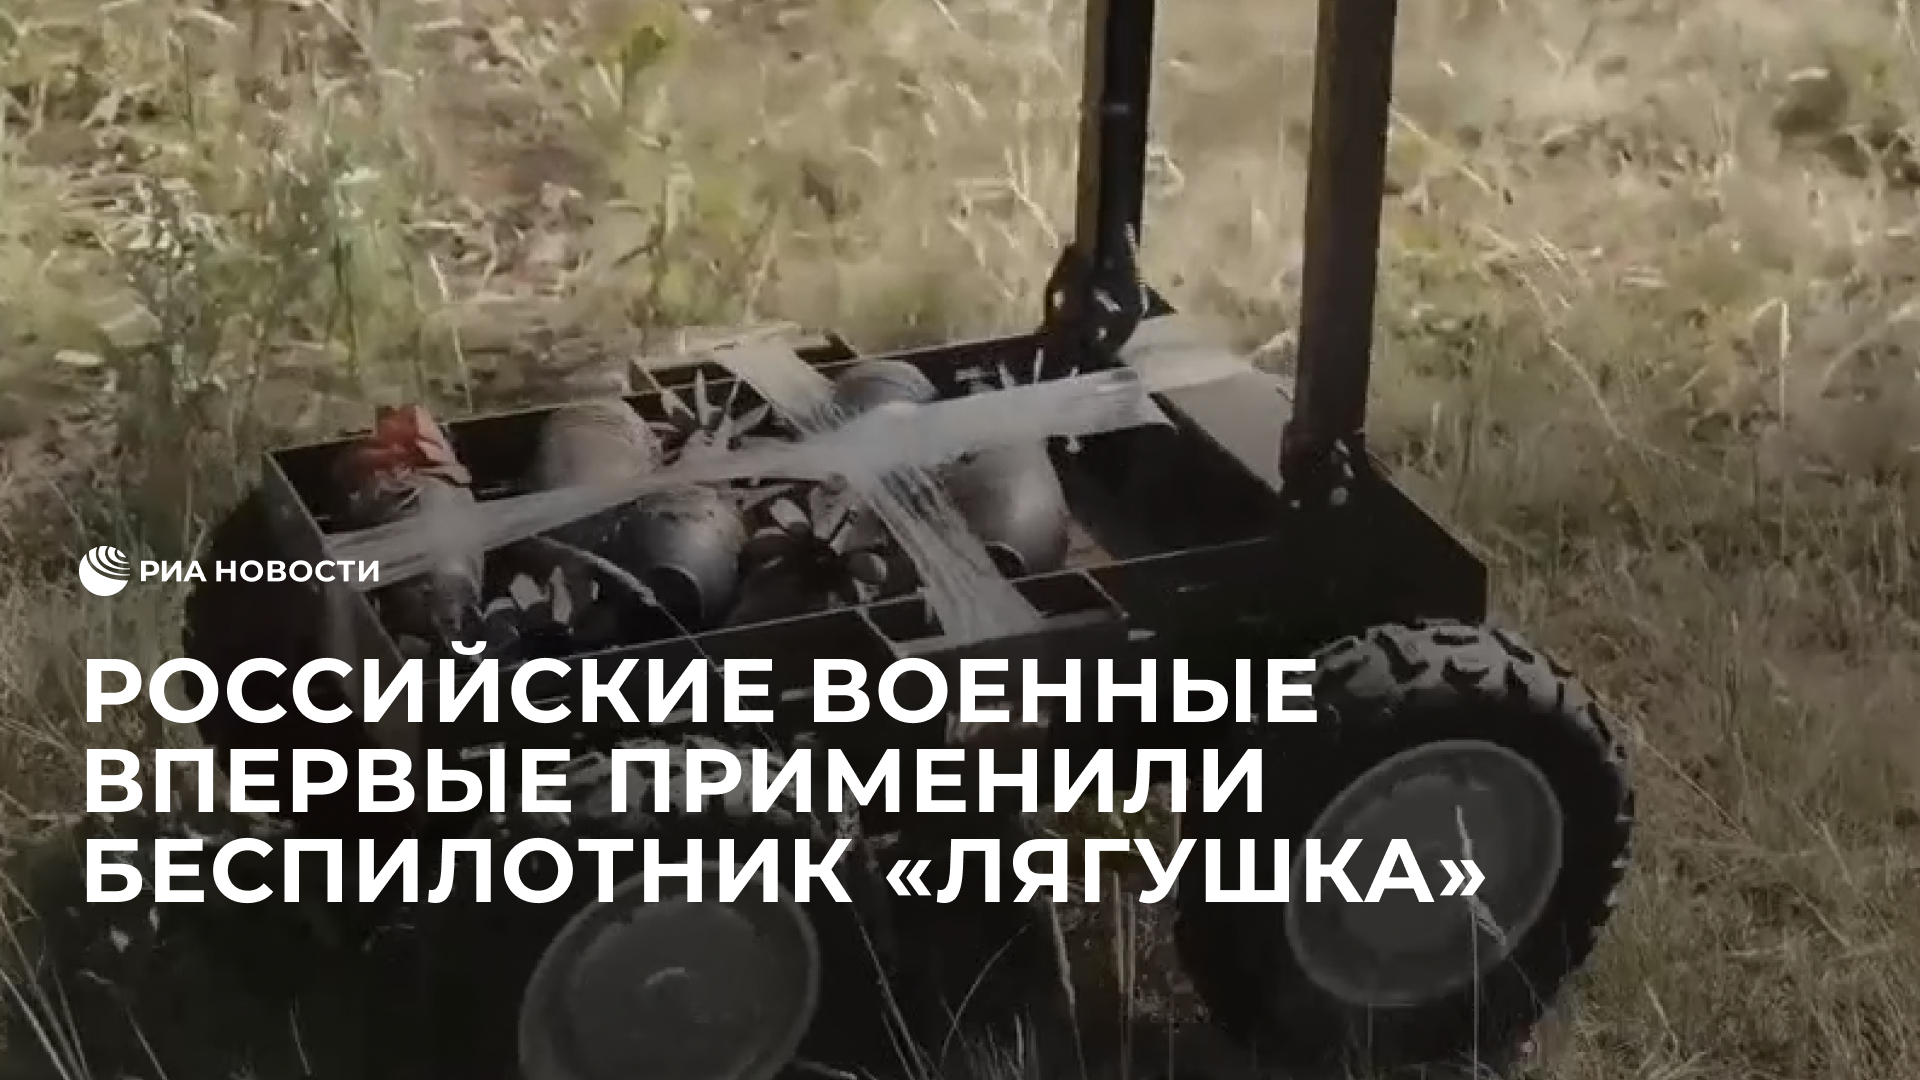 Российские военные впервые применили беспилотник "Лягушка"